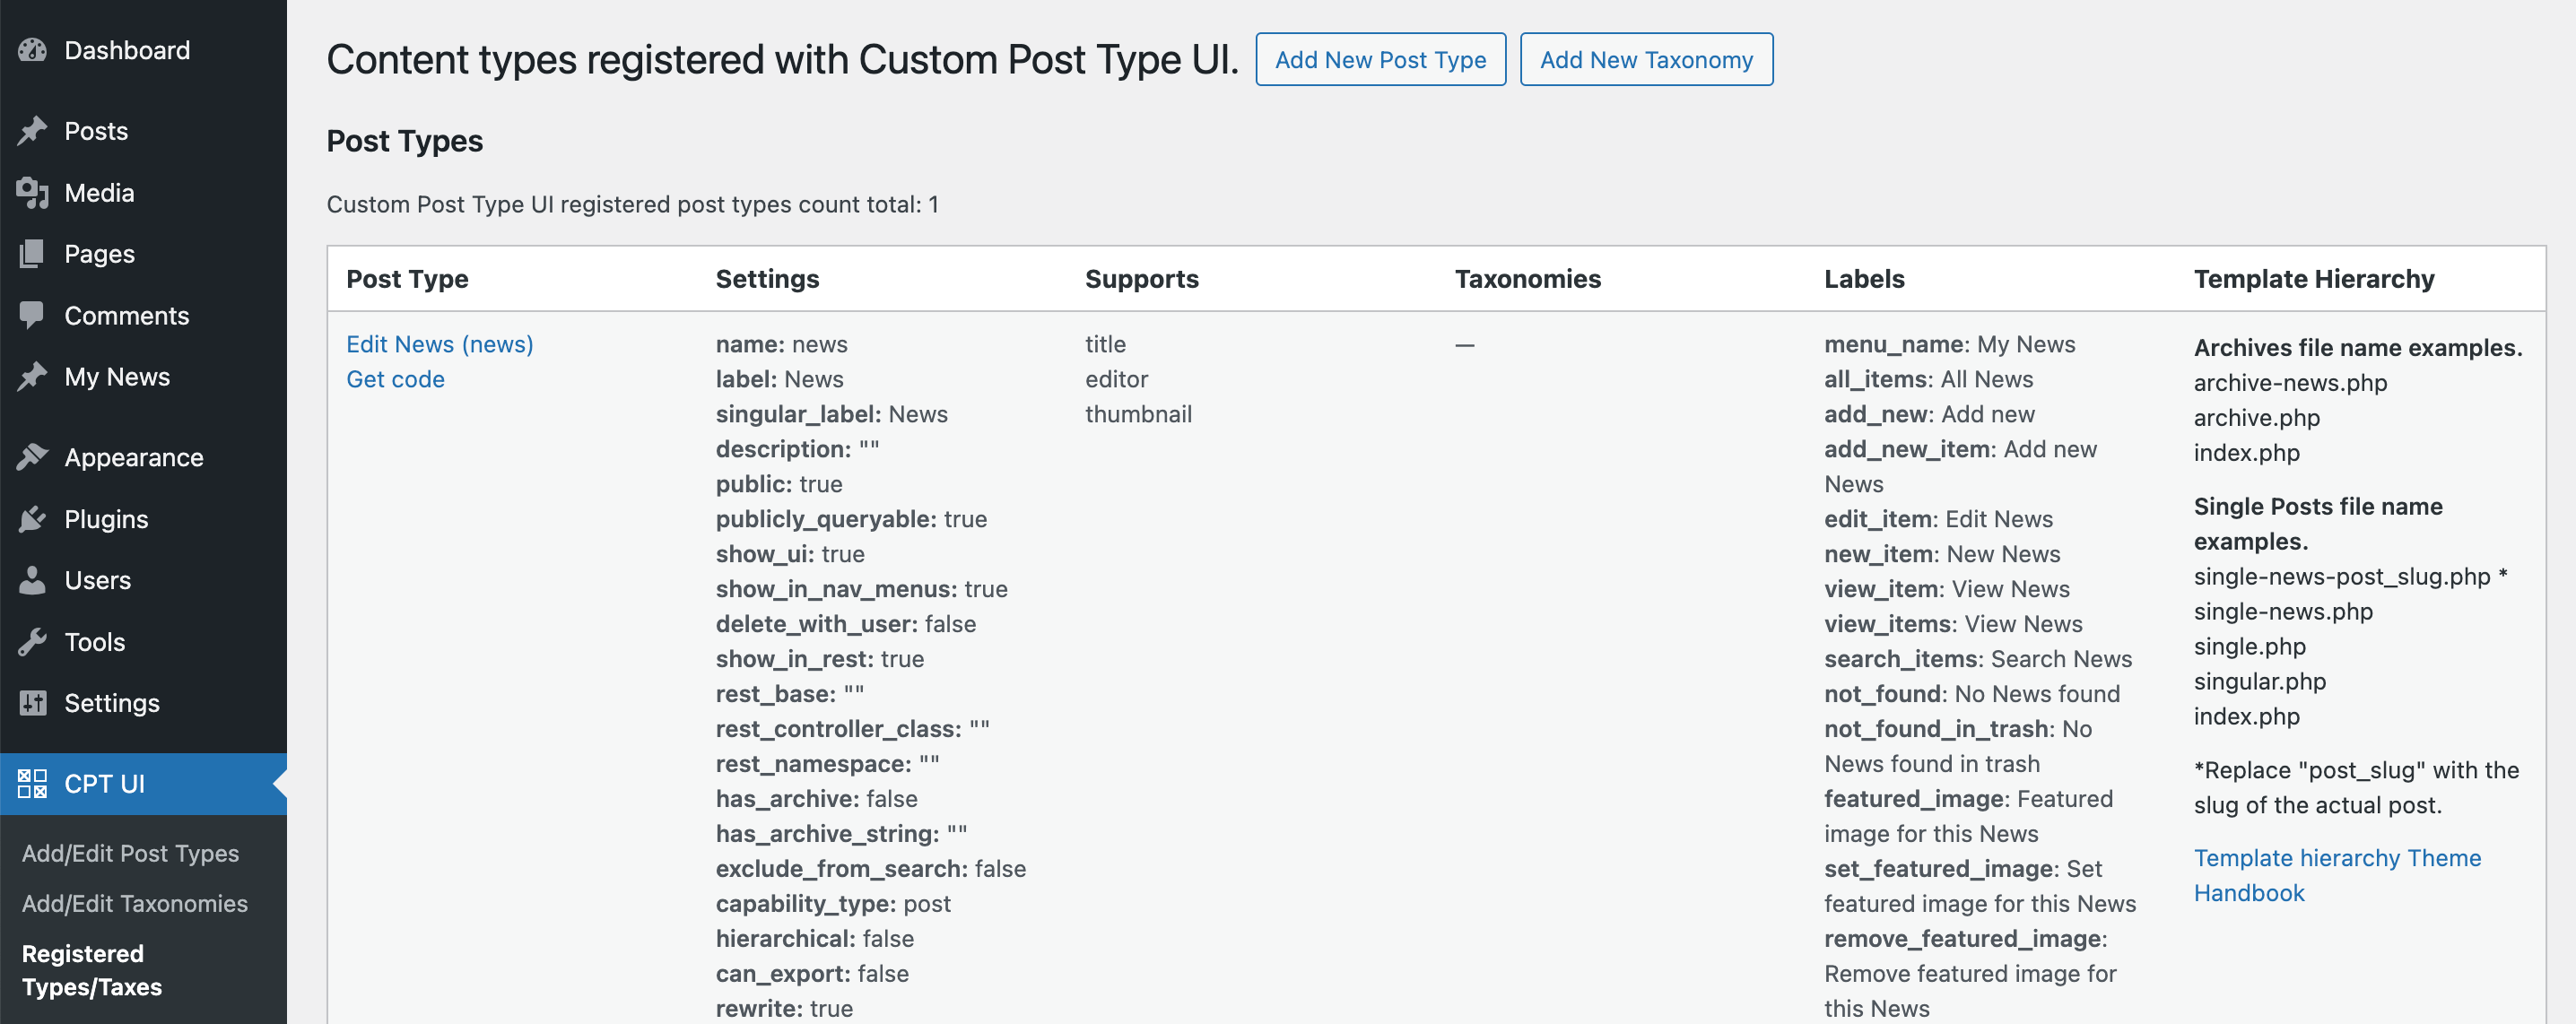 Ikhtisar Jenis Posting Kustom WordPress yang dibuat oleh plugin Custom Post Type UI.